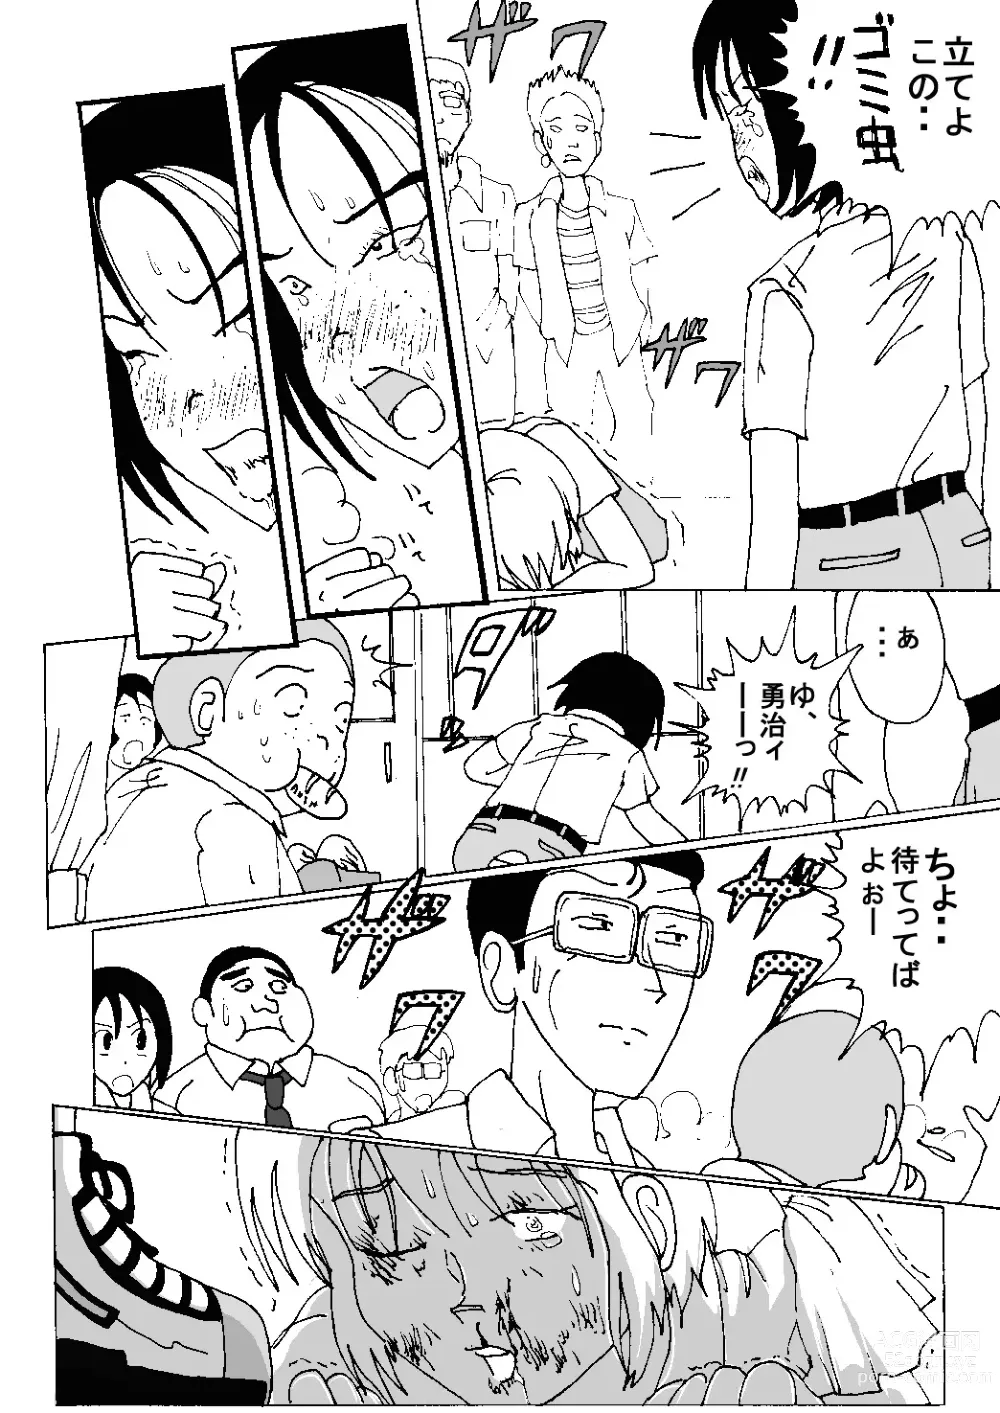 Page 14 of doujinshi Mune Ippai no Dizzy Ch. 8